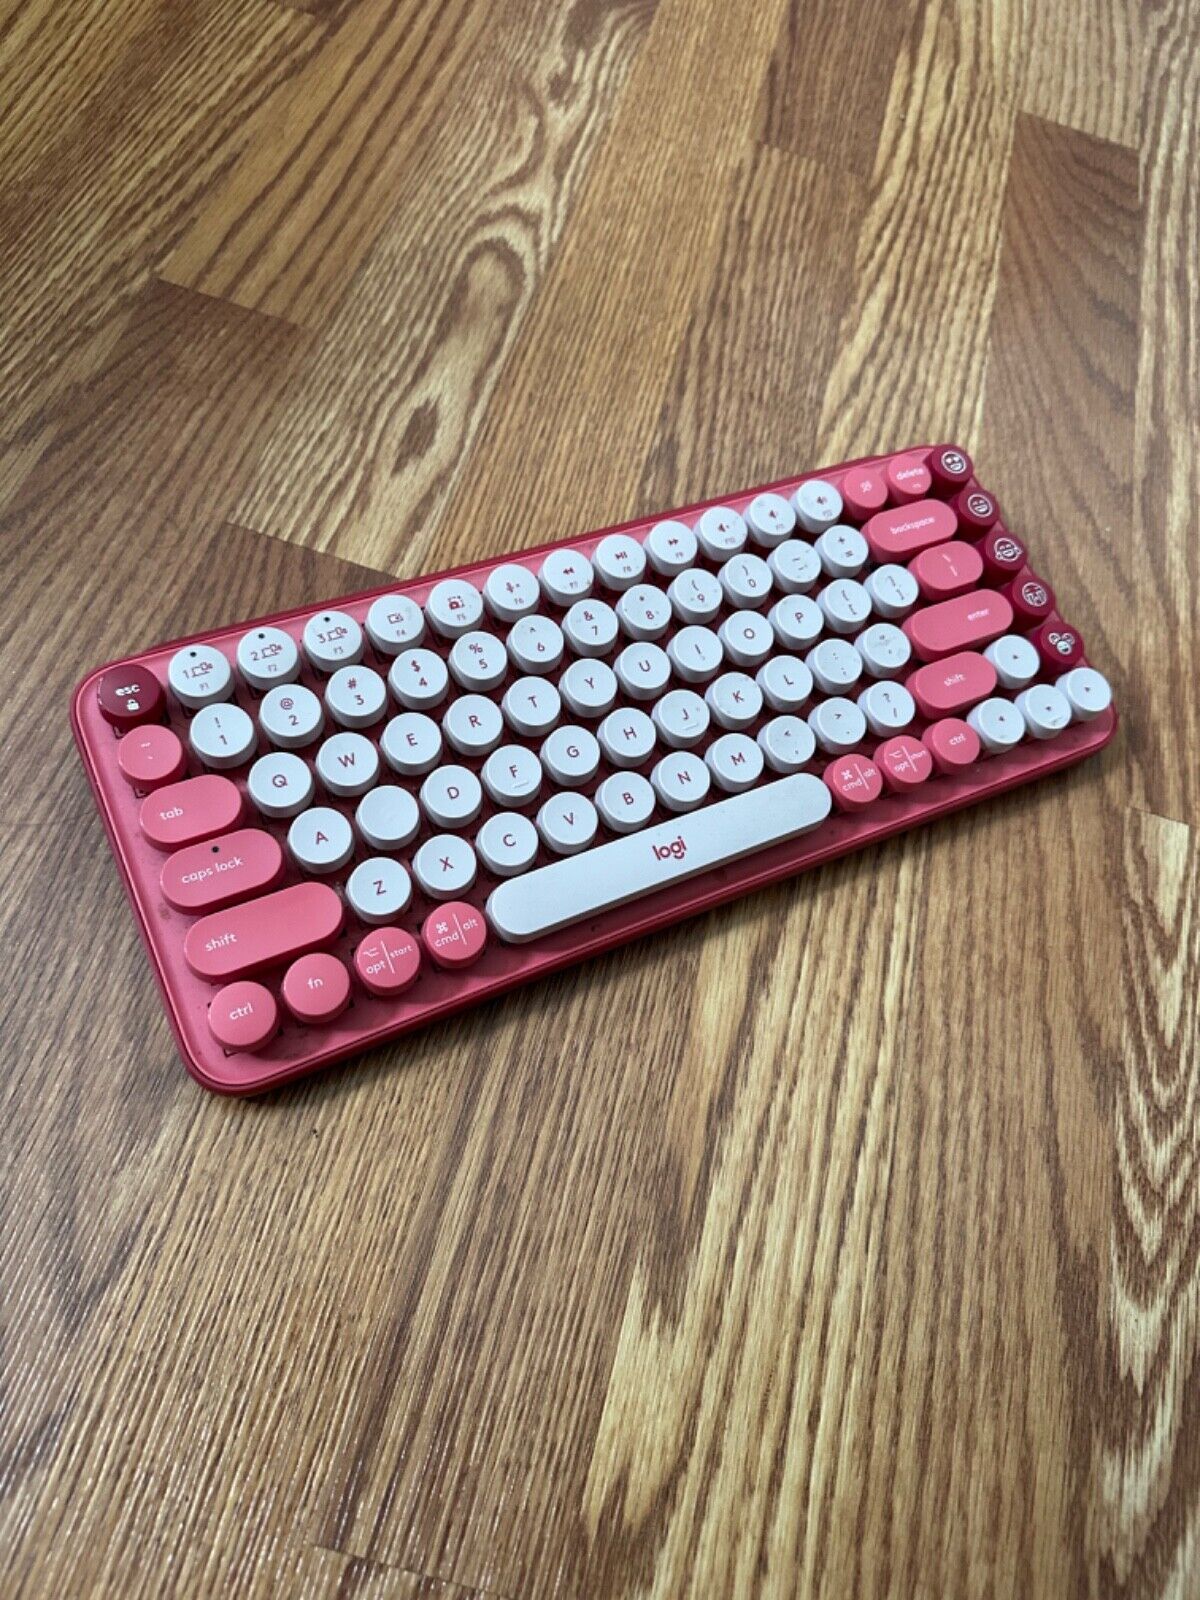 Logitech POP Mechanical Wireless Keyboard in heartbreaker pink